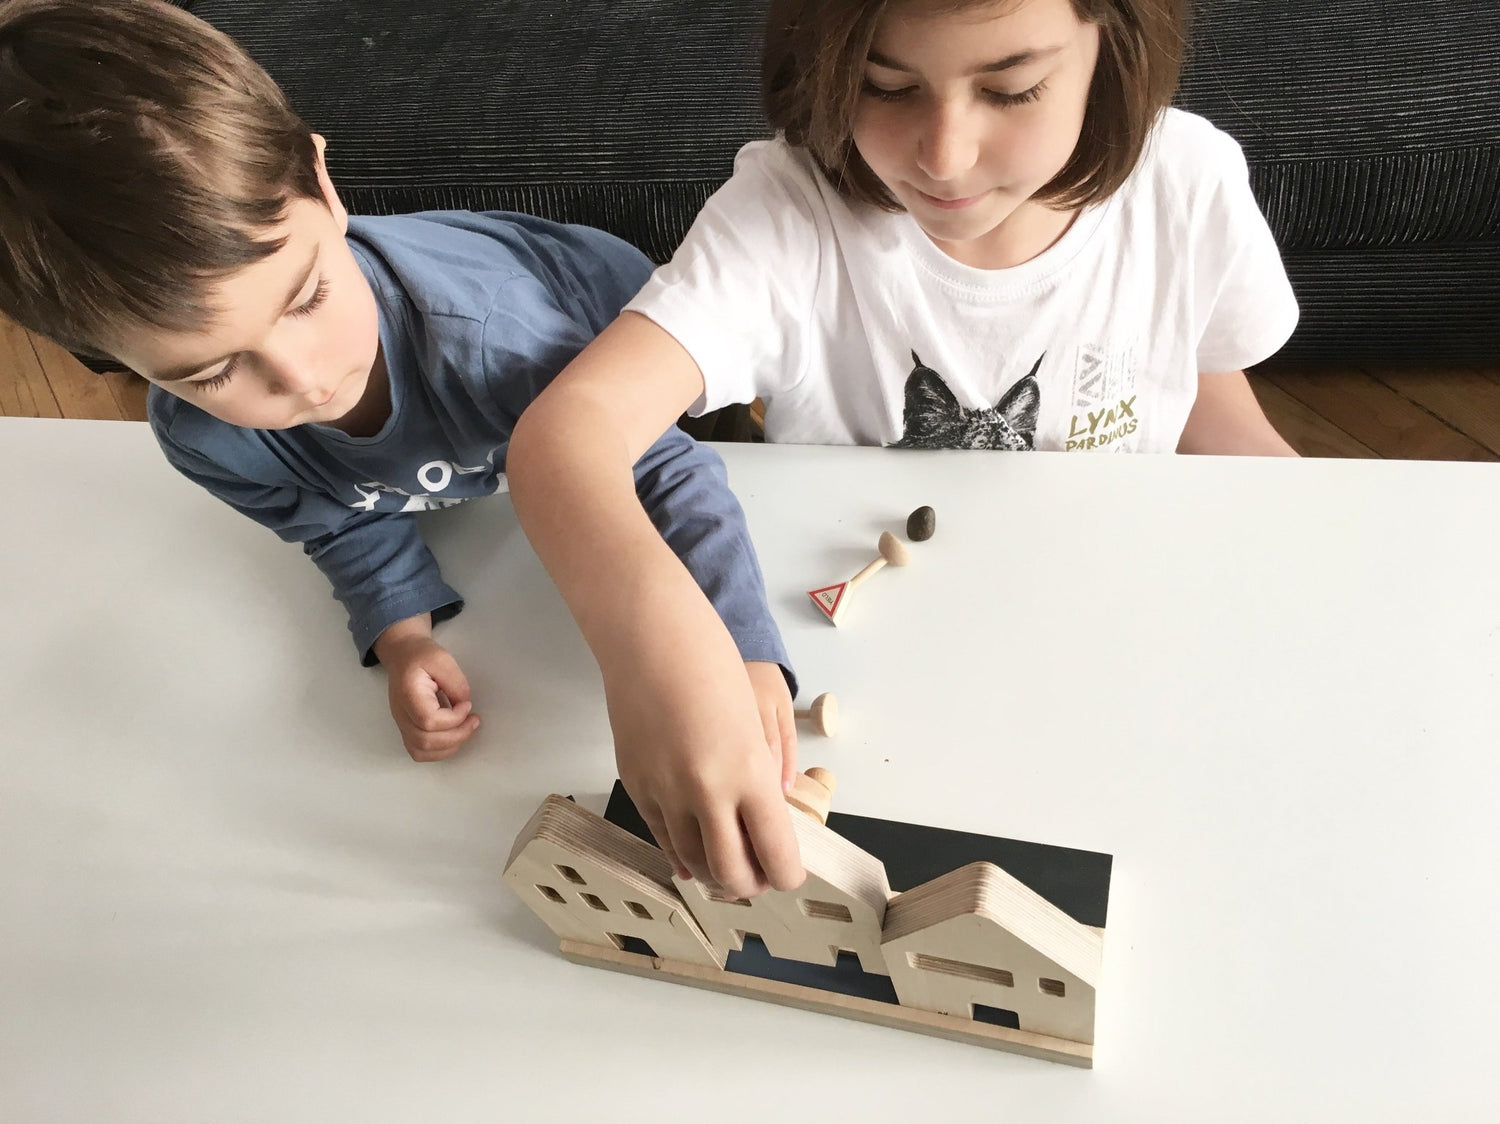 Dos niños jugando con unas casitas de juguete hechas de madera